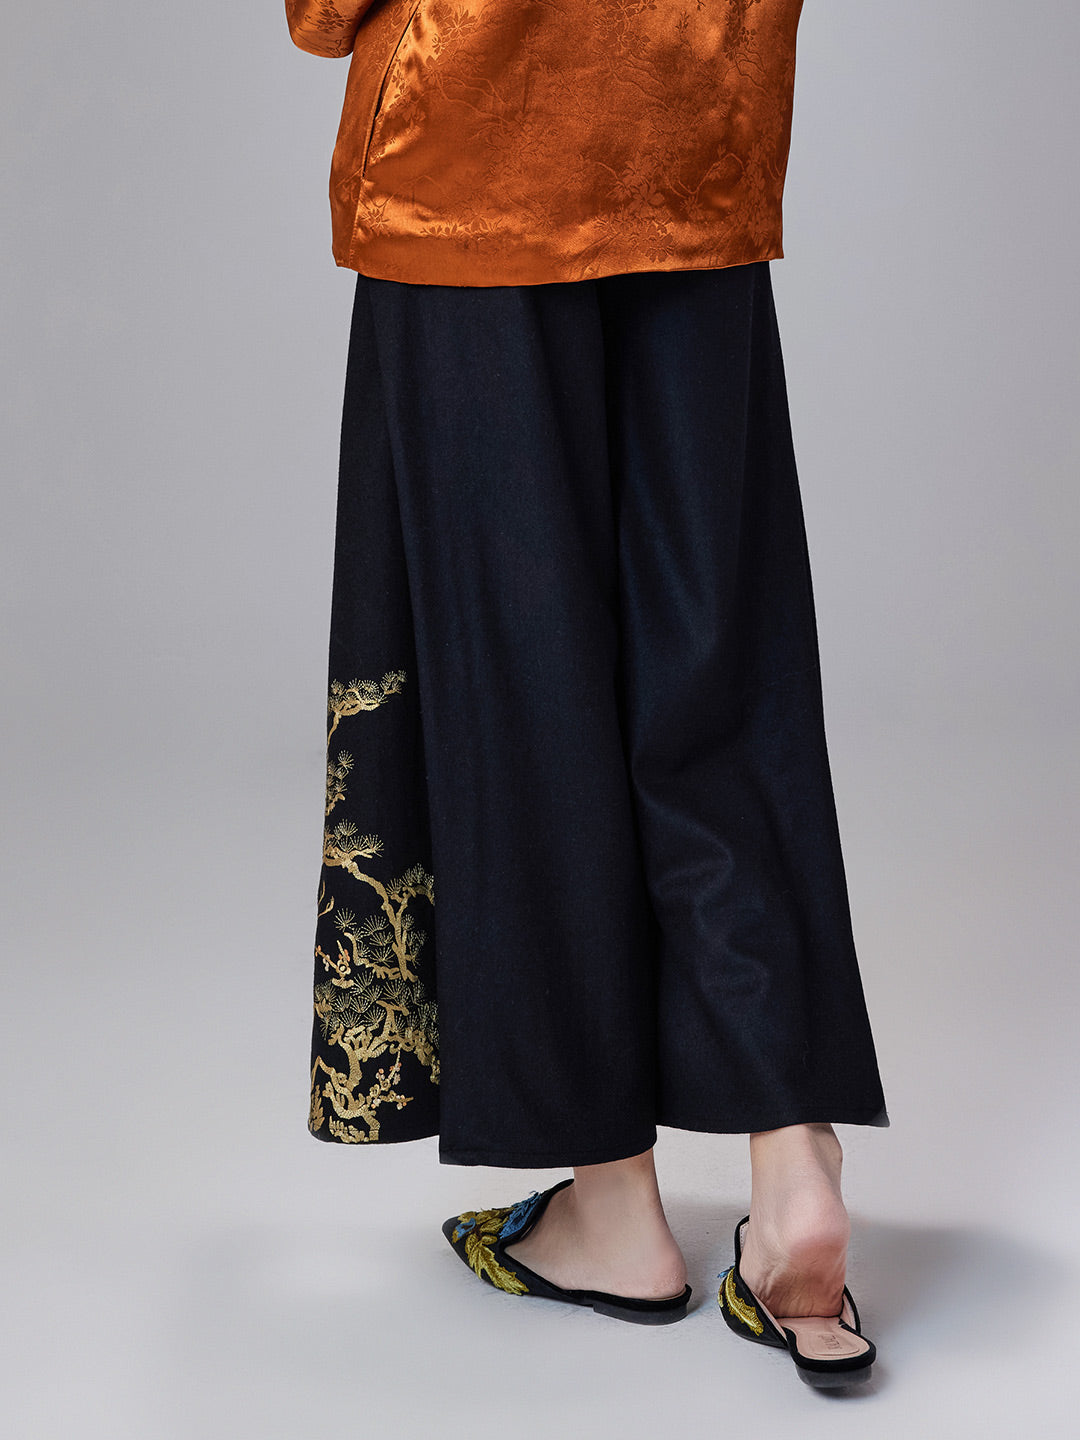 Dahlia Luxe Mood Qipao Cheongsam Skirt